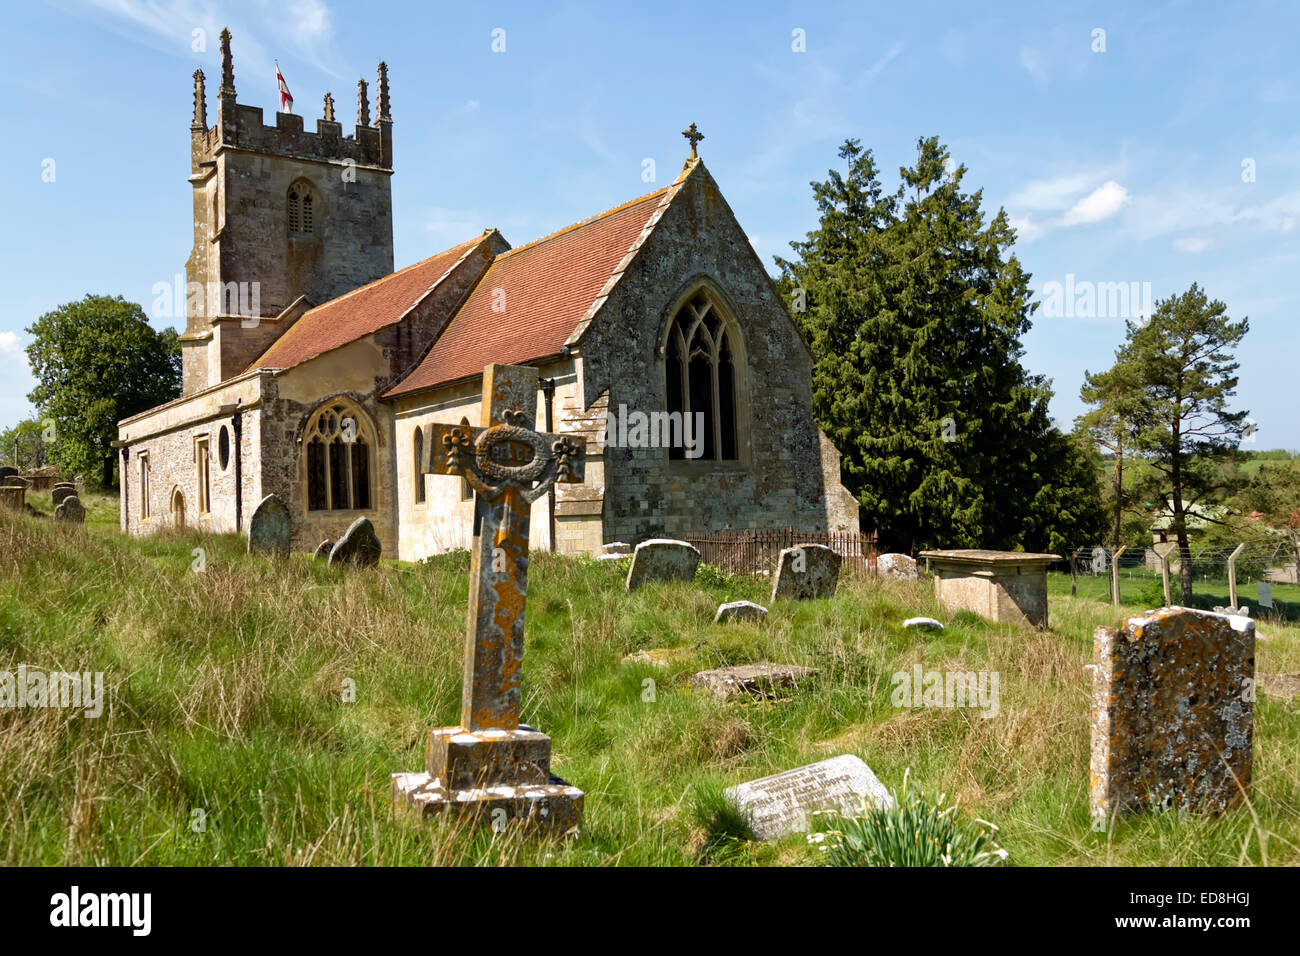 Imber Église, l'église de St Giles, dans le village inhabité de Imber dans la plaine de Salisbury, Wiltshire, Royaume-Uni. Banque D'Images